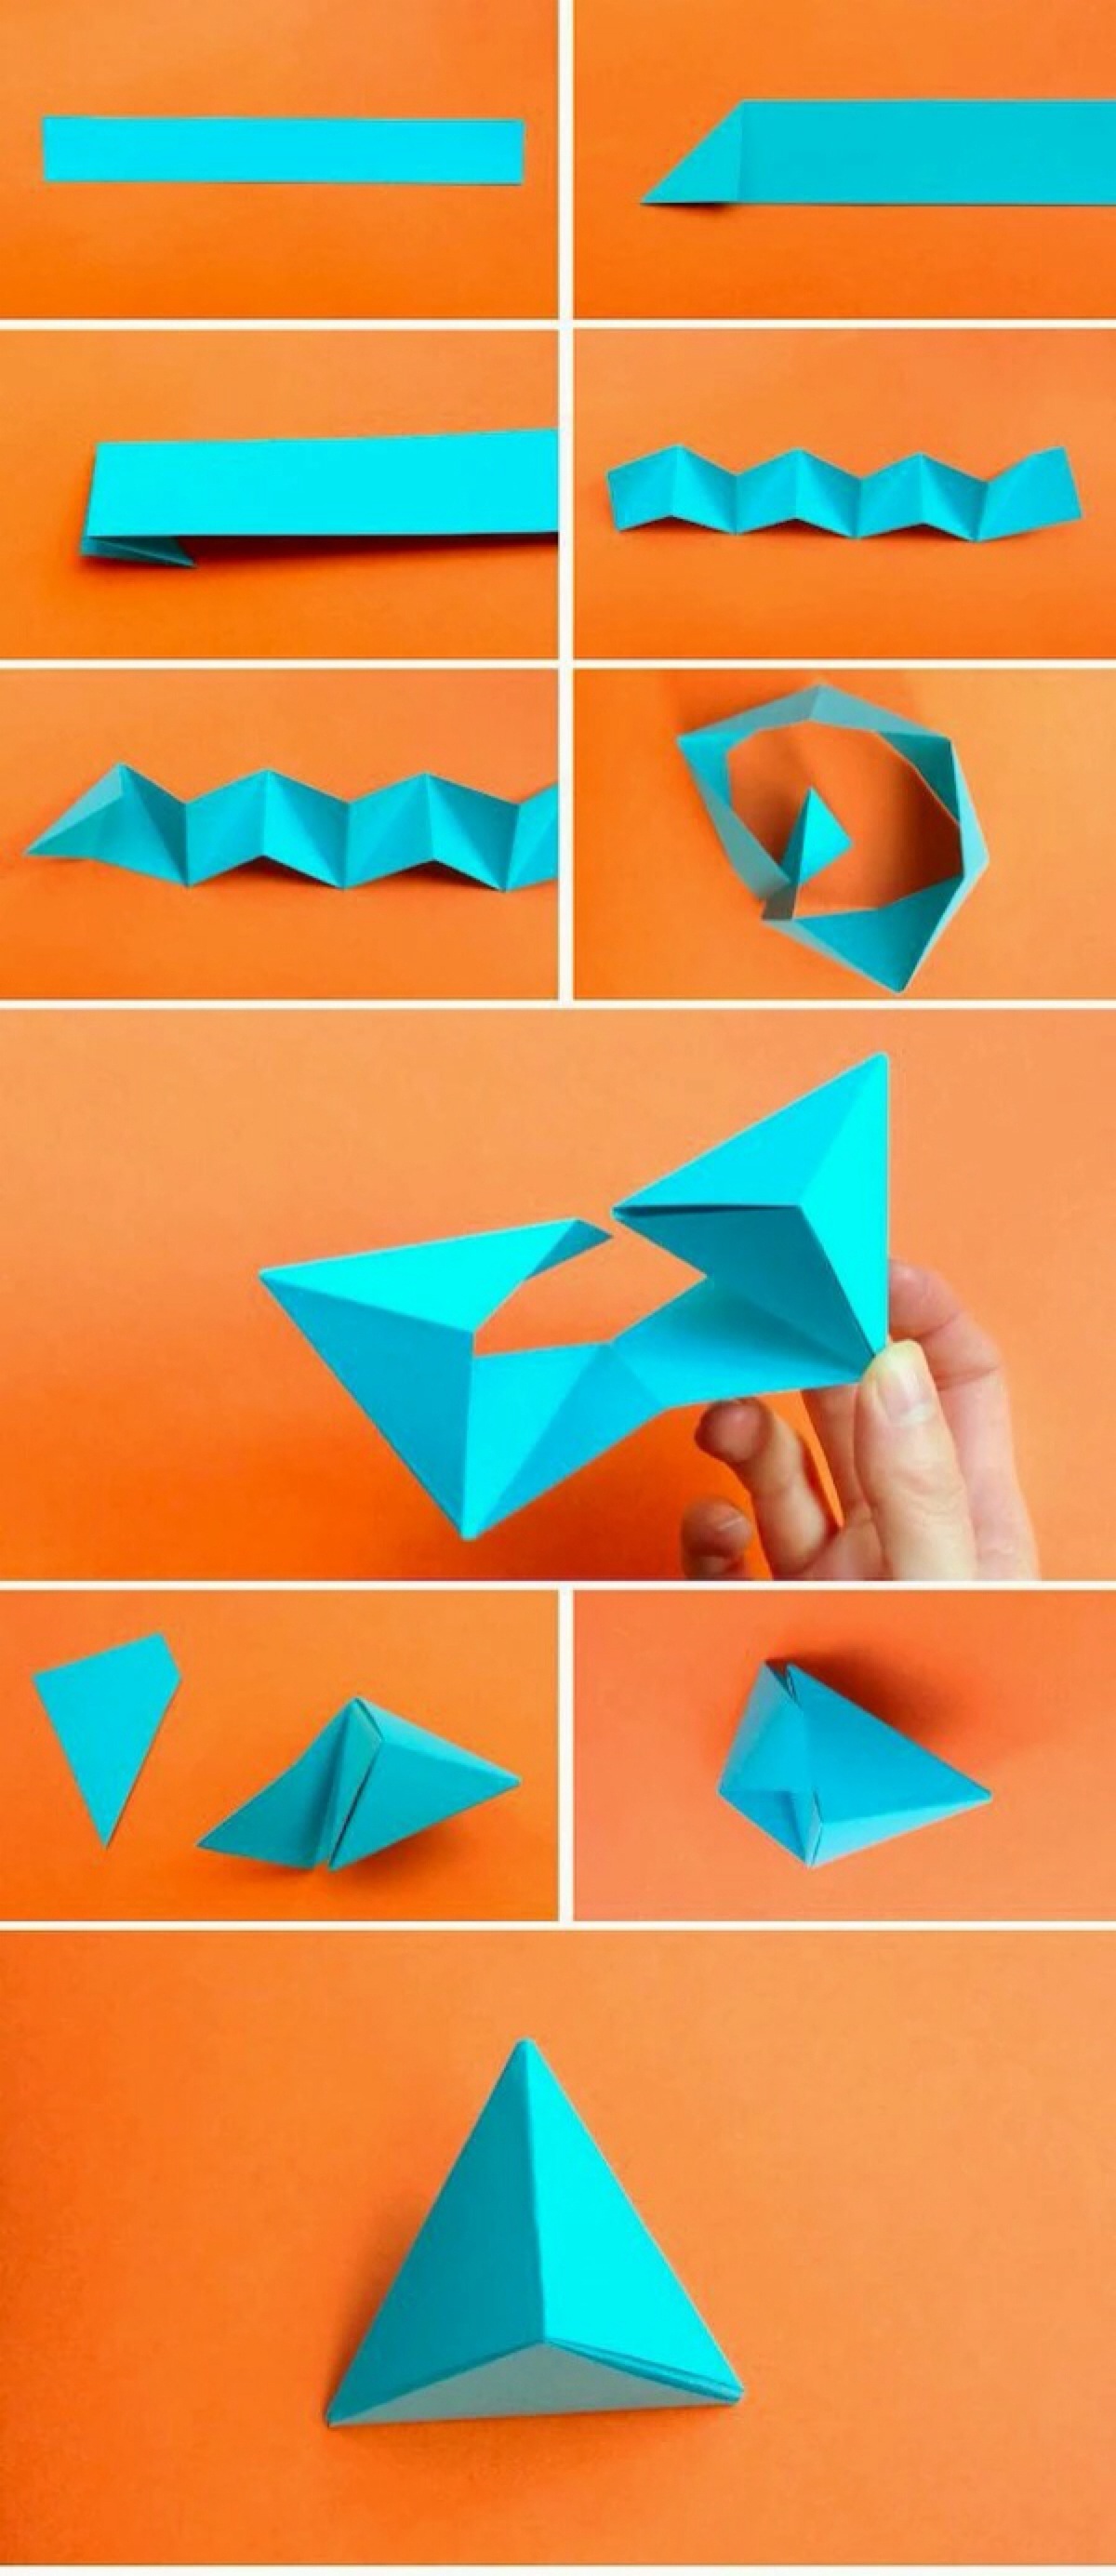 折纸三角形包角图片